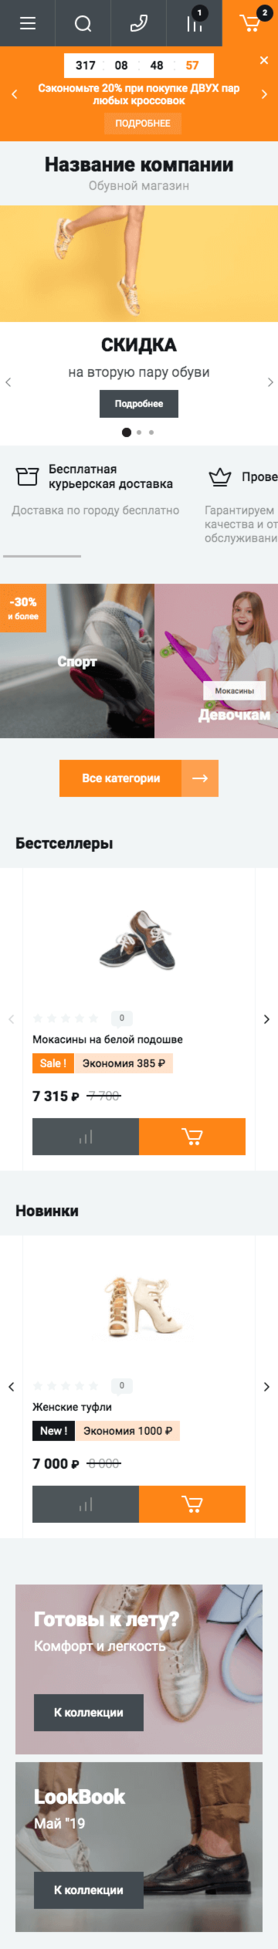 Готовый Интернет-магазин № 2429793 - Интернет-магазин обуви (Мобильная версия)